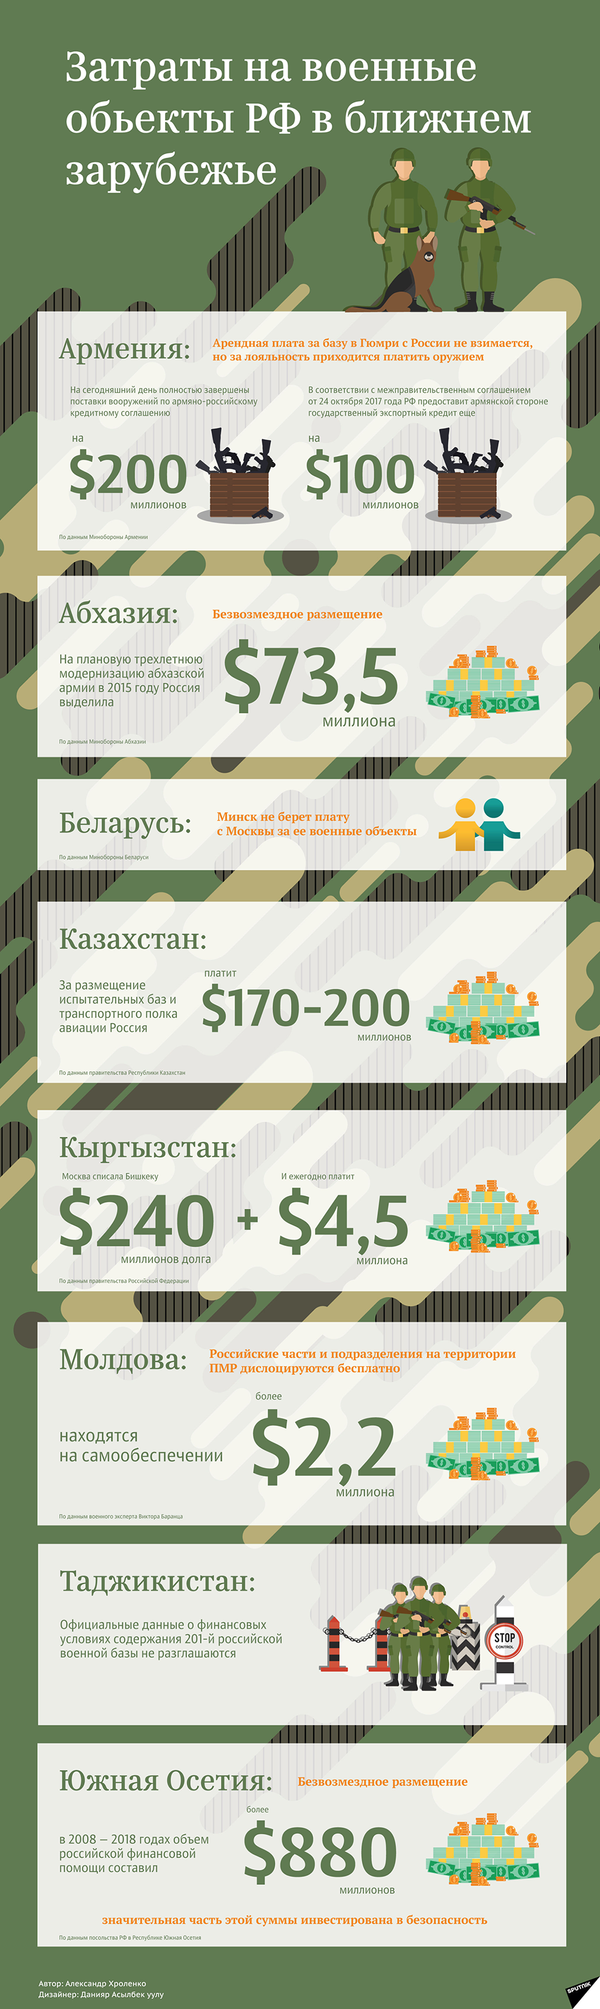 Затраты на российские военные объекты в ближнем зарубежье – инфографика на sputnik.by - Sputnik Беларусь